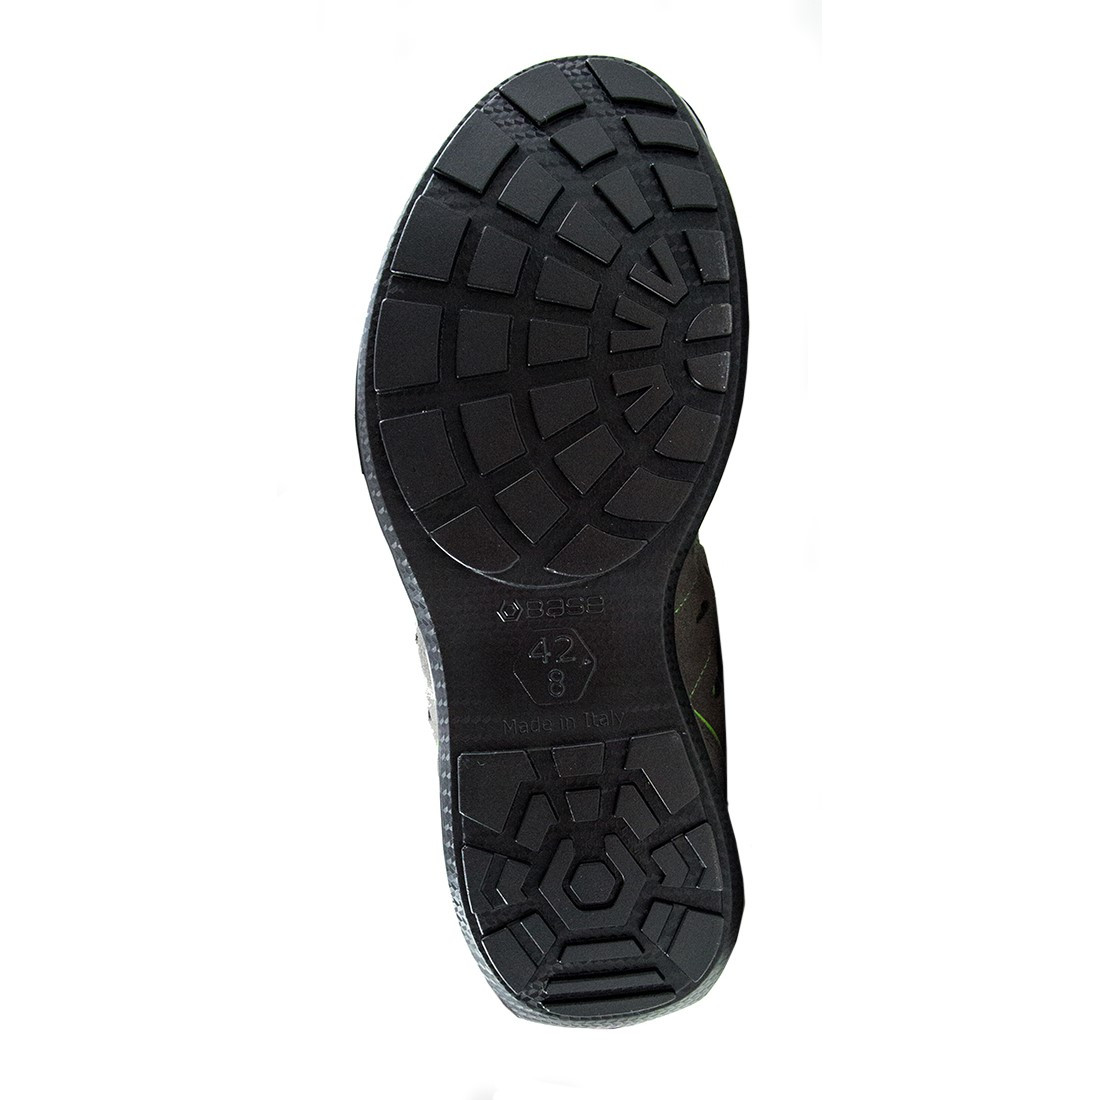 Pantofi Attitude S1P SRC - Incaltaminte de protectie | Bocanci, Pantofi, Sandale, Cizme